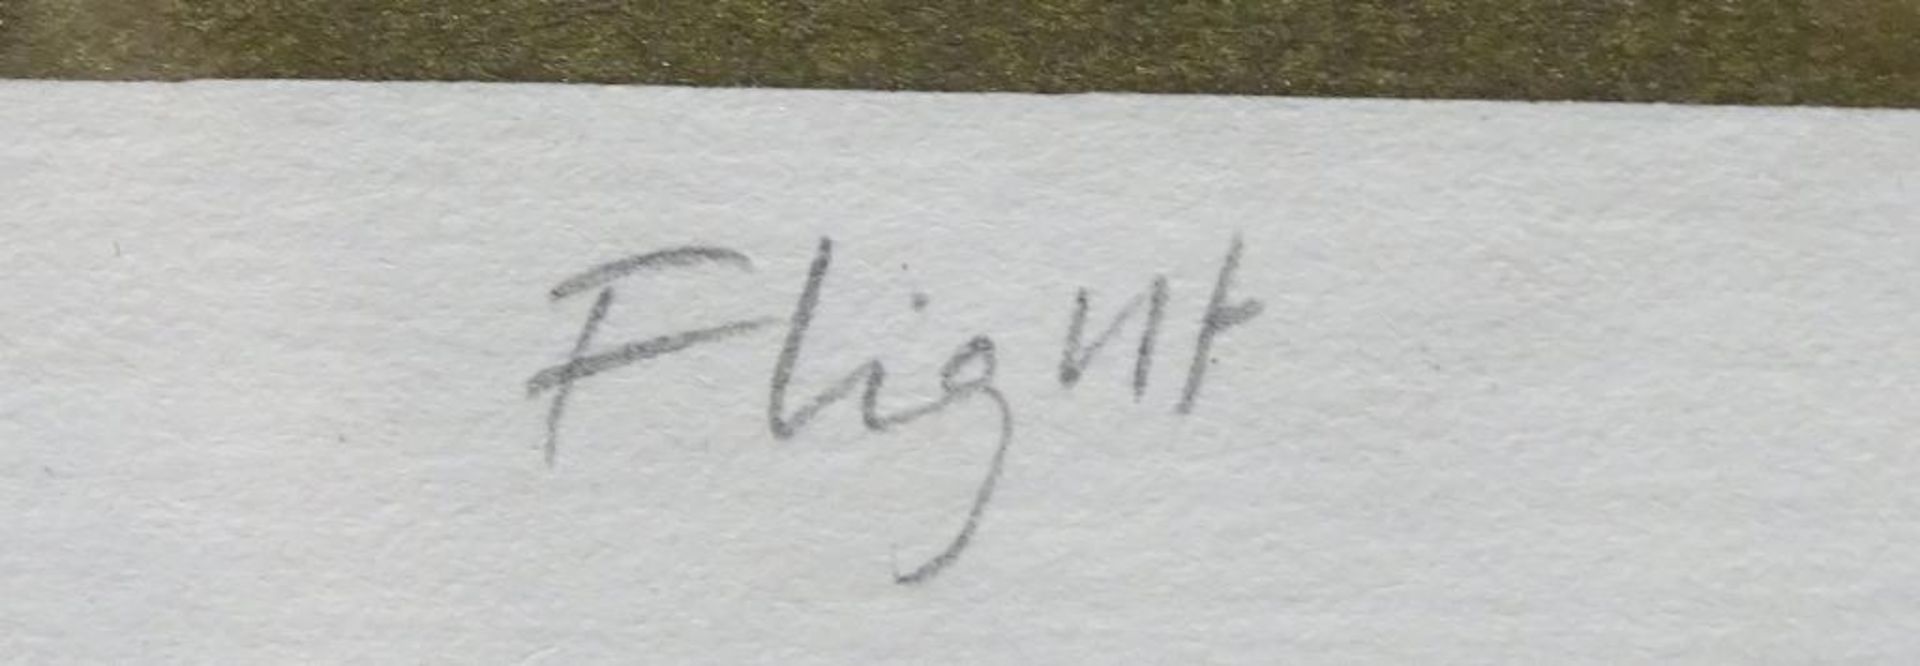 Lithografie,Bildprägung, 125/300, "Flight", signiert,Cunningham,RG 40x30c - Bild 6 aus 7